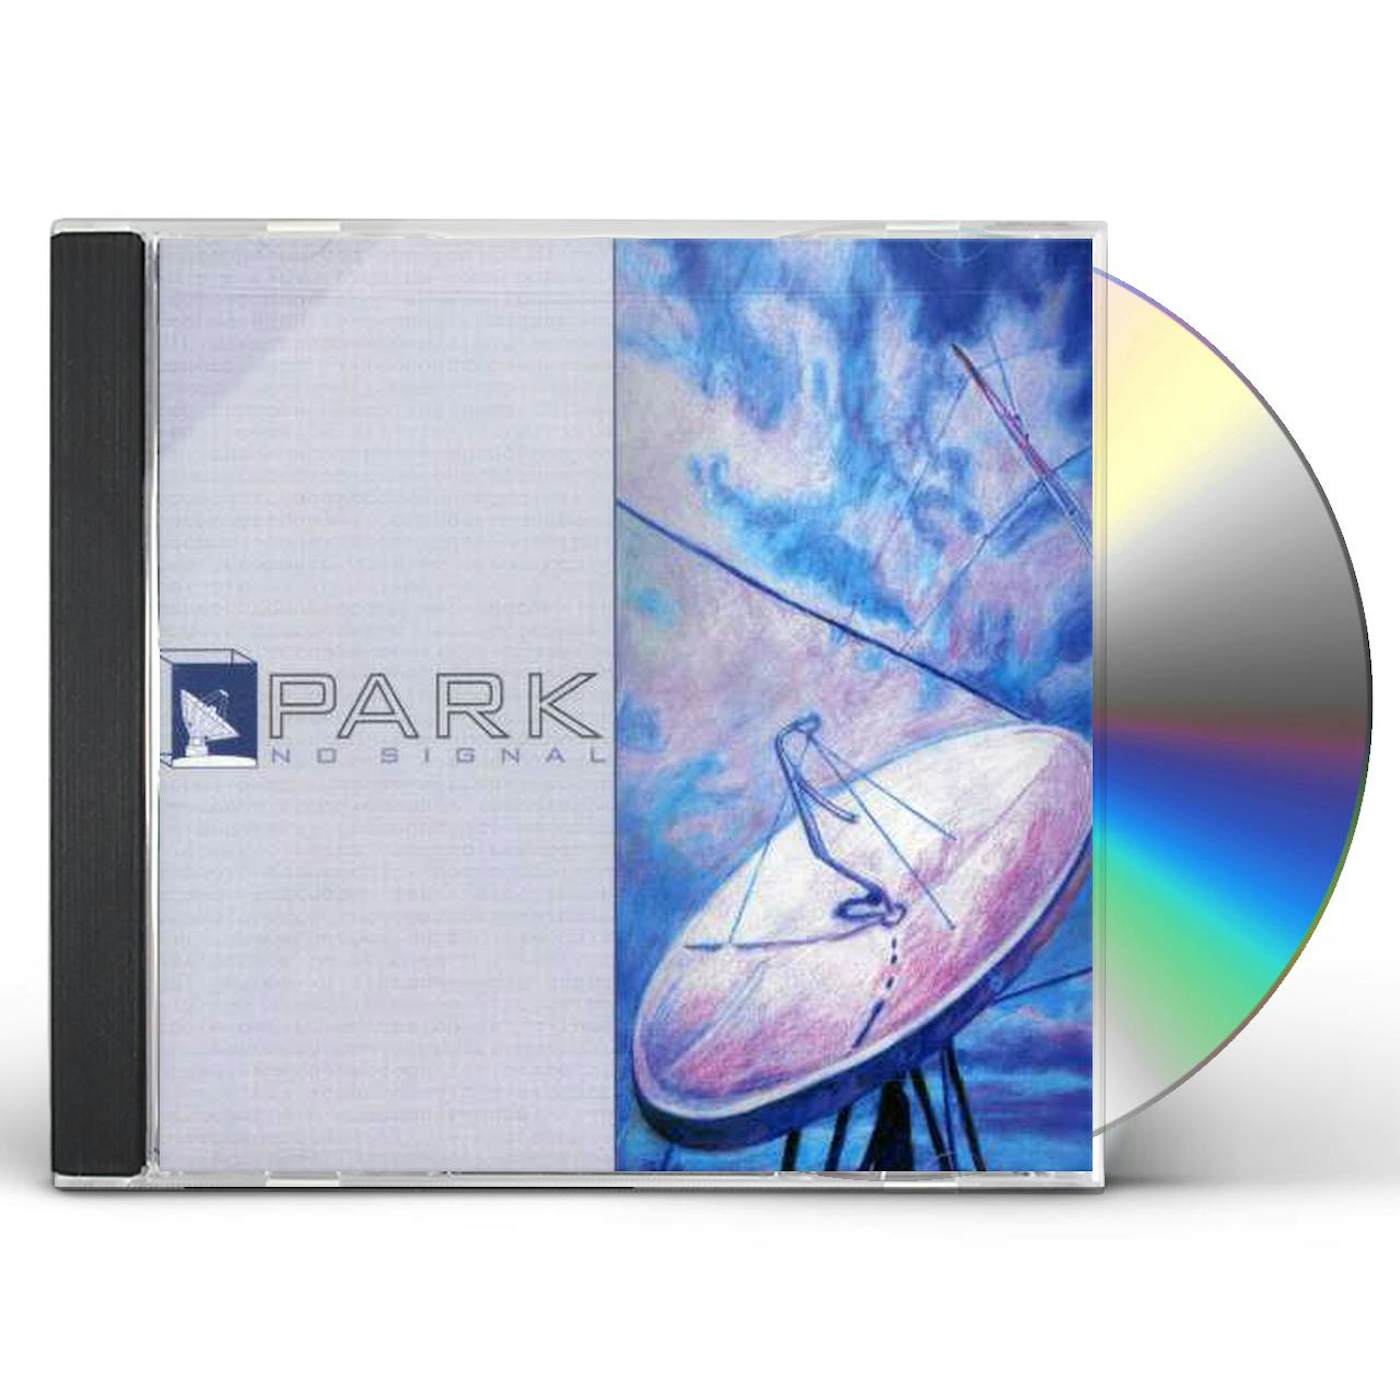 Park NO SIGNAL CD